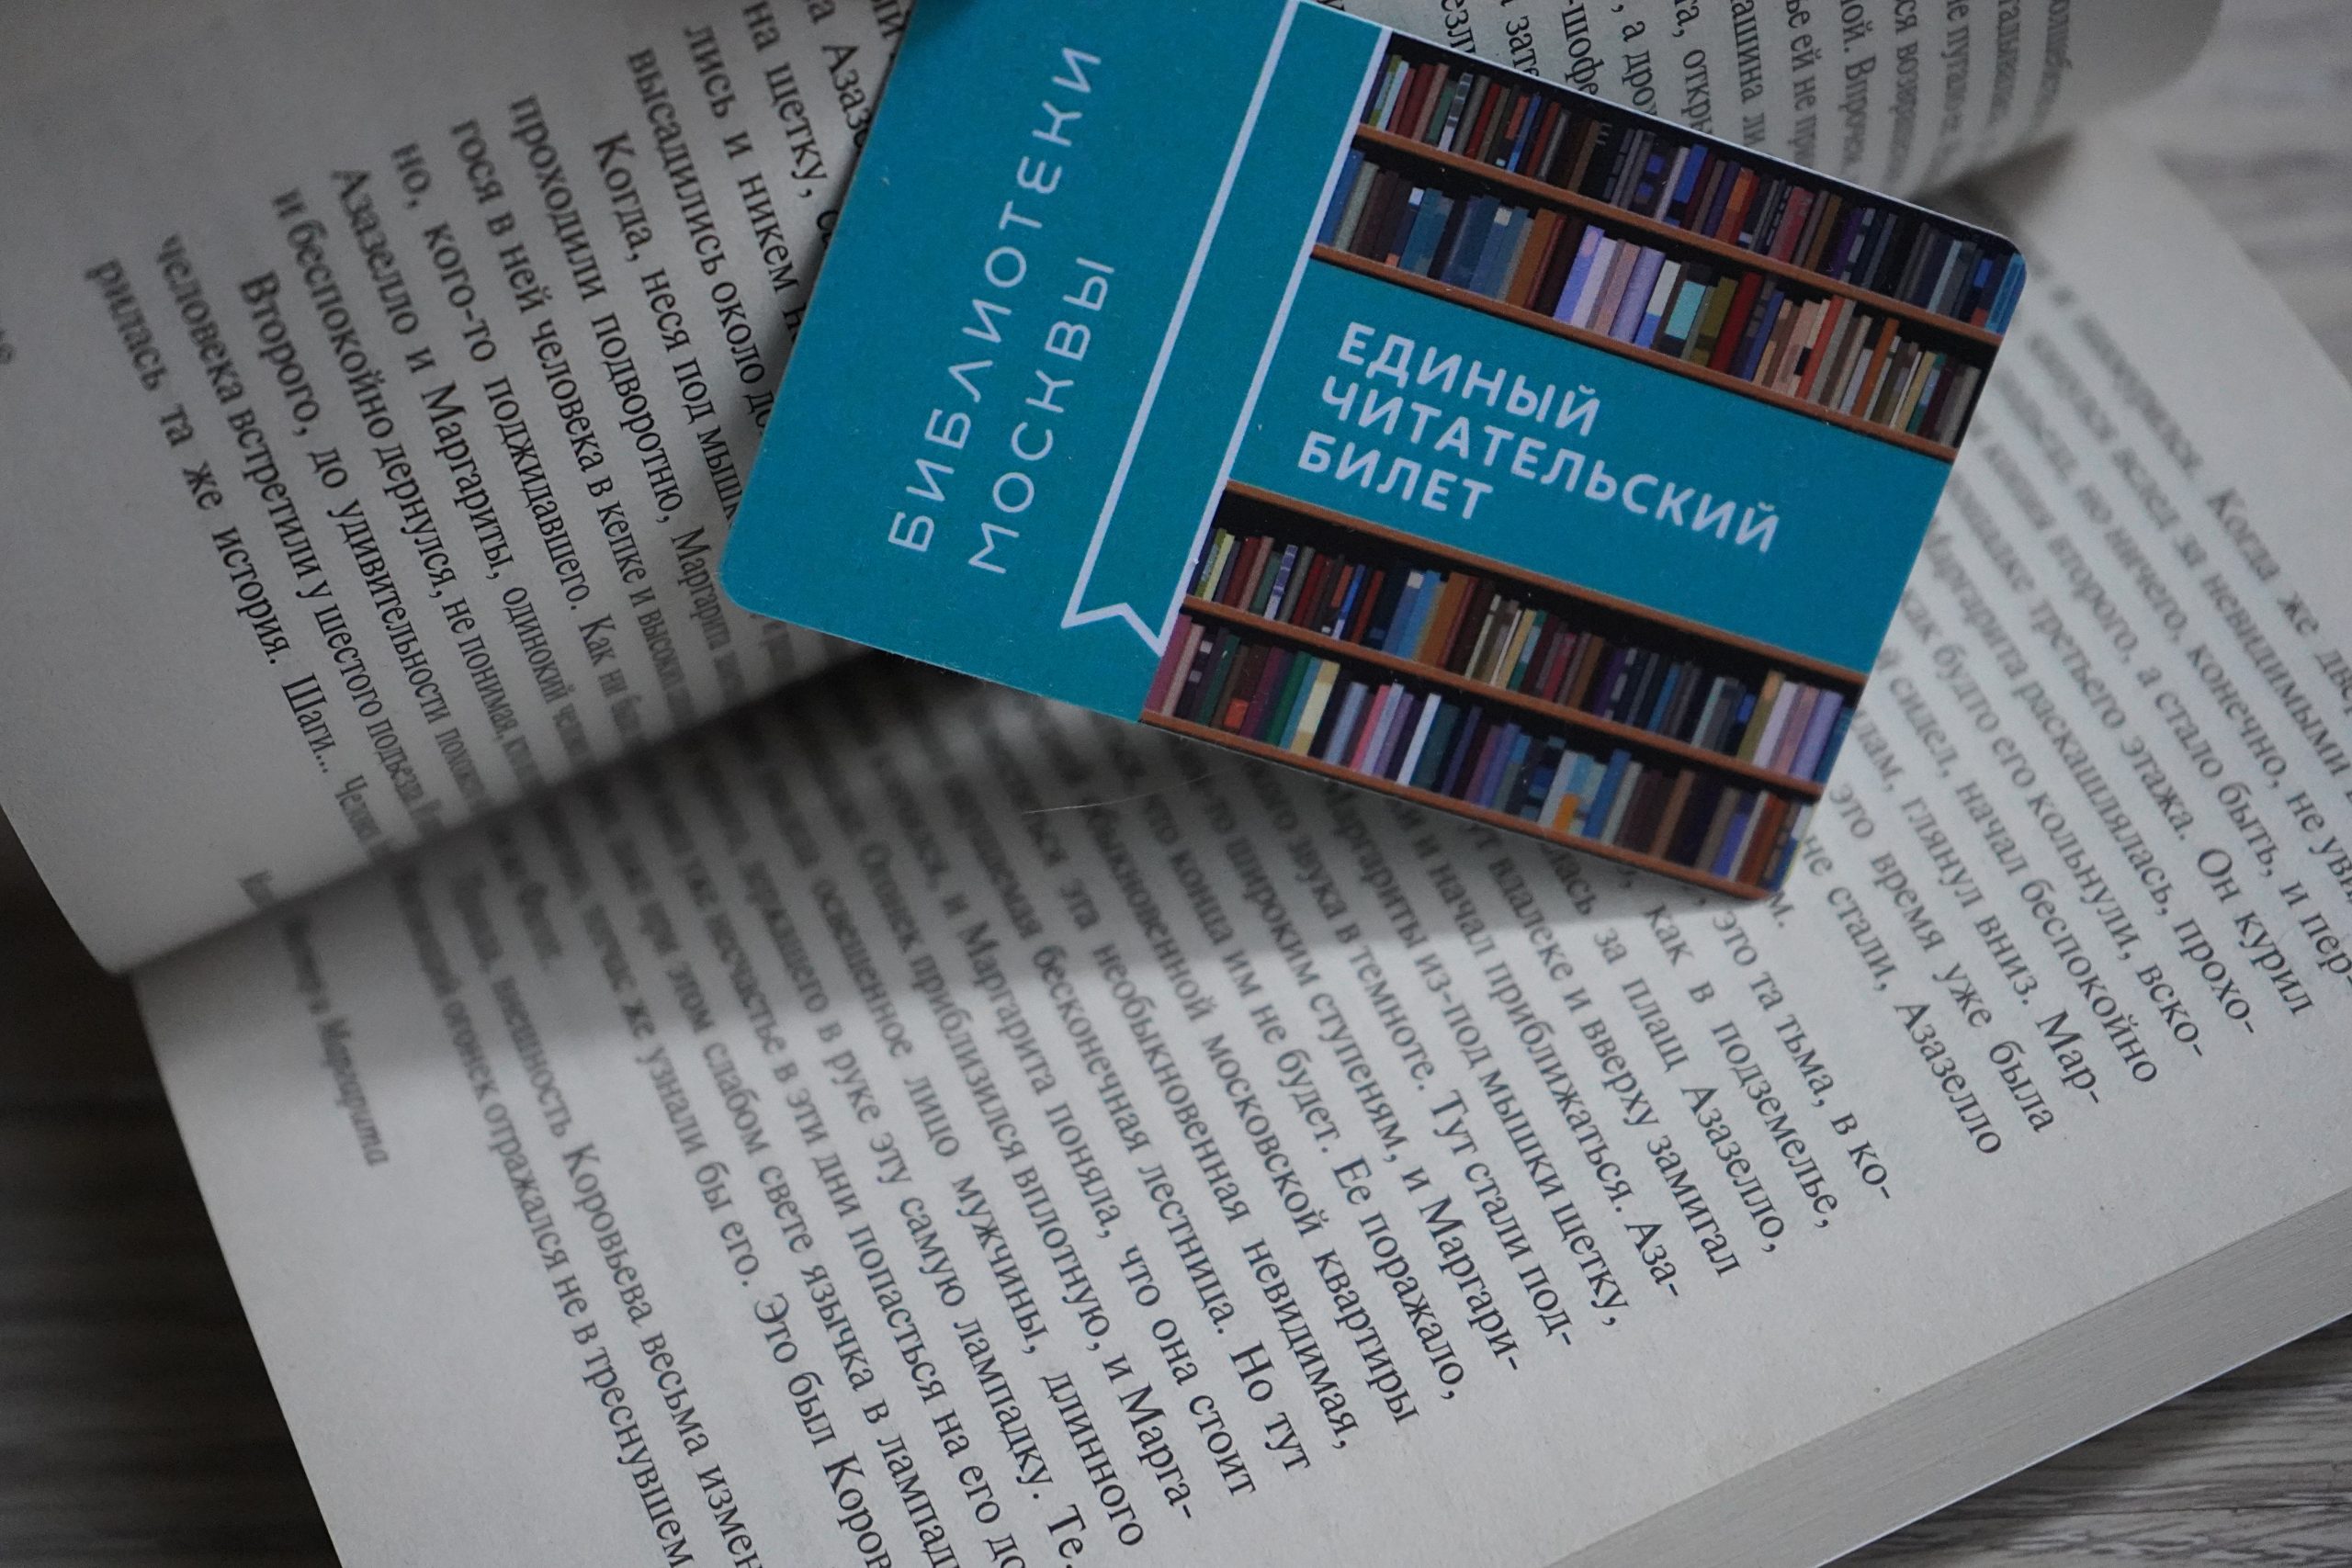 Мероприятие о богатырях пройдет в библиотеке №139. Фото: Анна Быкова «Вечерняя Москва»